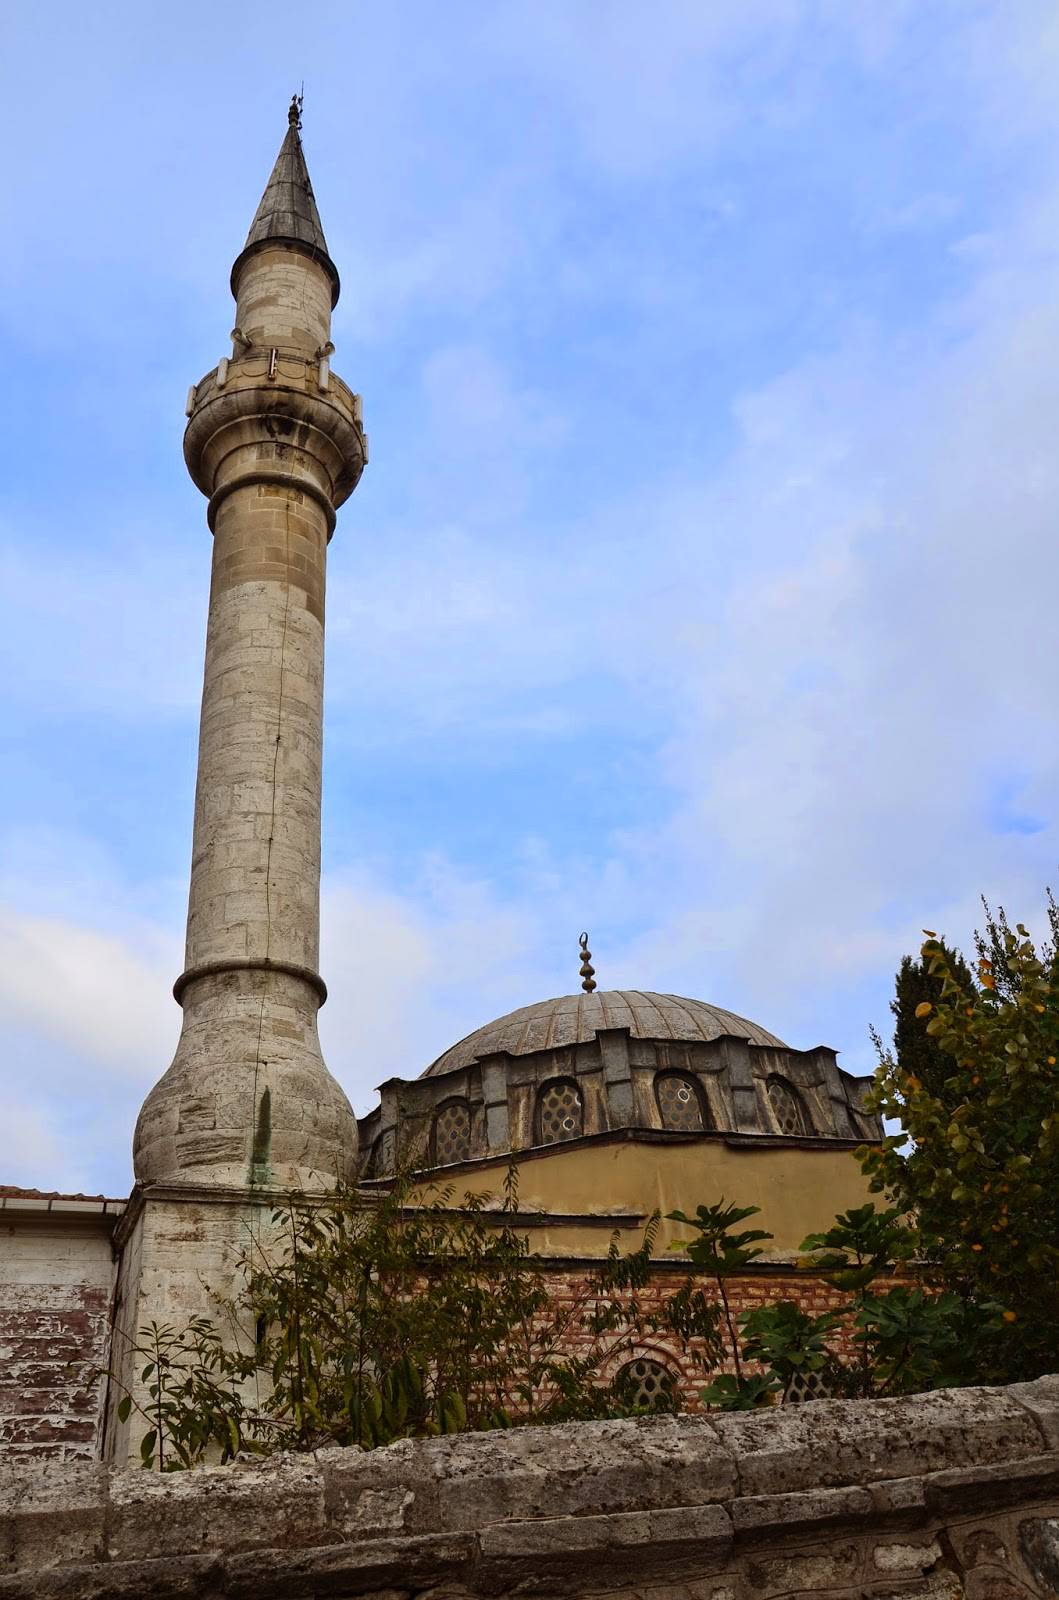 Kaptan Pasha Mosque in Üsküdar, Istanbul, Turkey